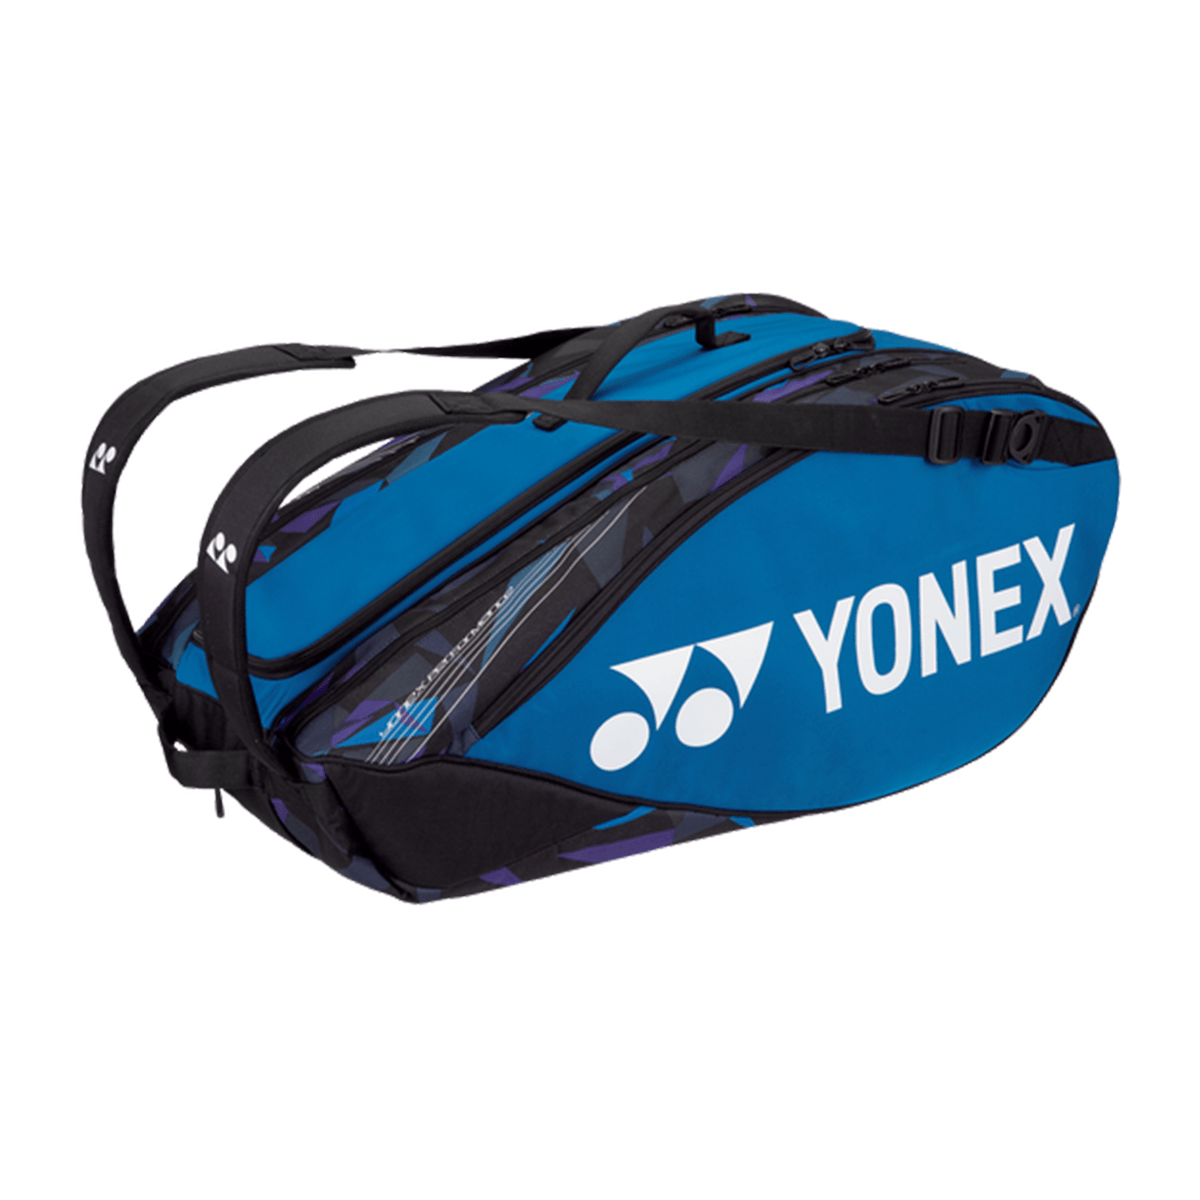 YONEX 9PK PRO RACQUET BAG FINE BLUE - Marcotte Sports Inc